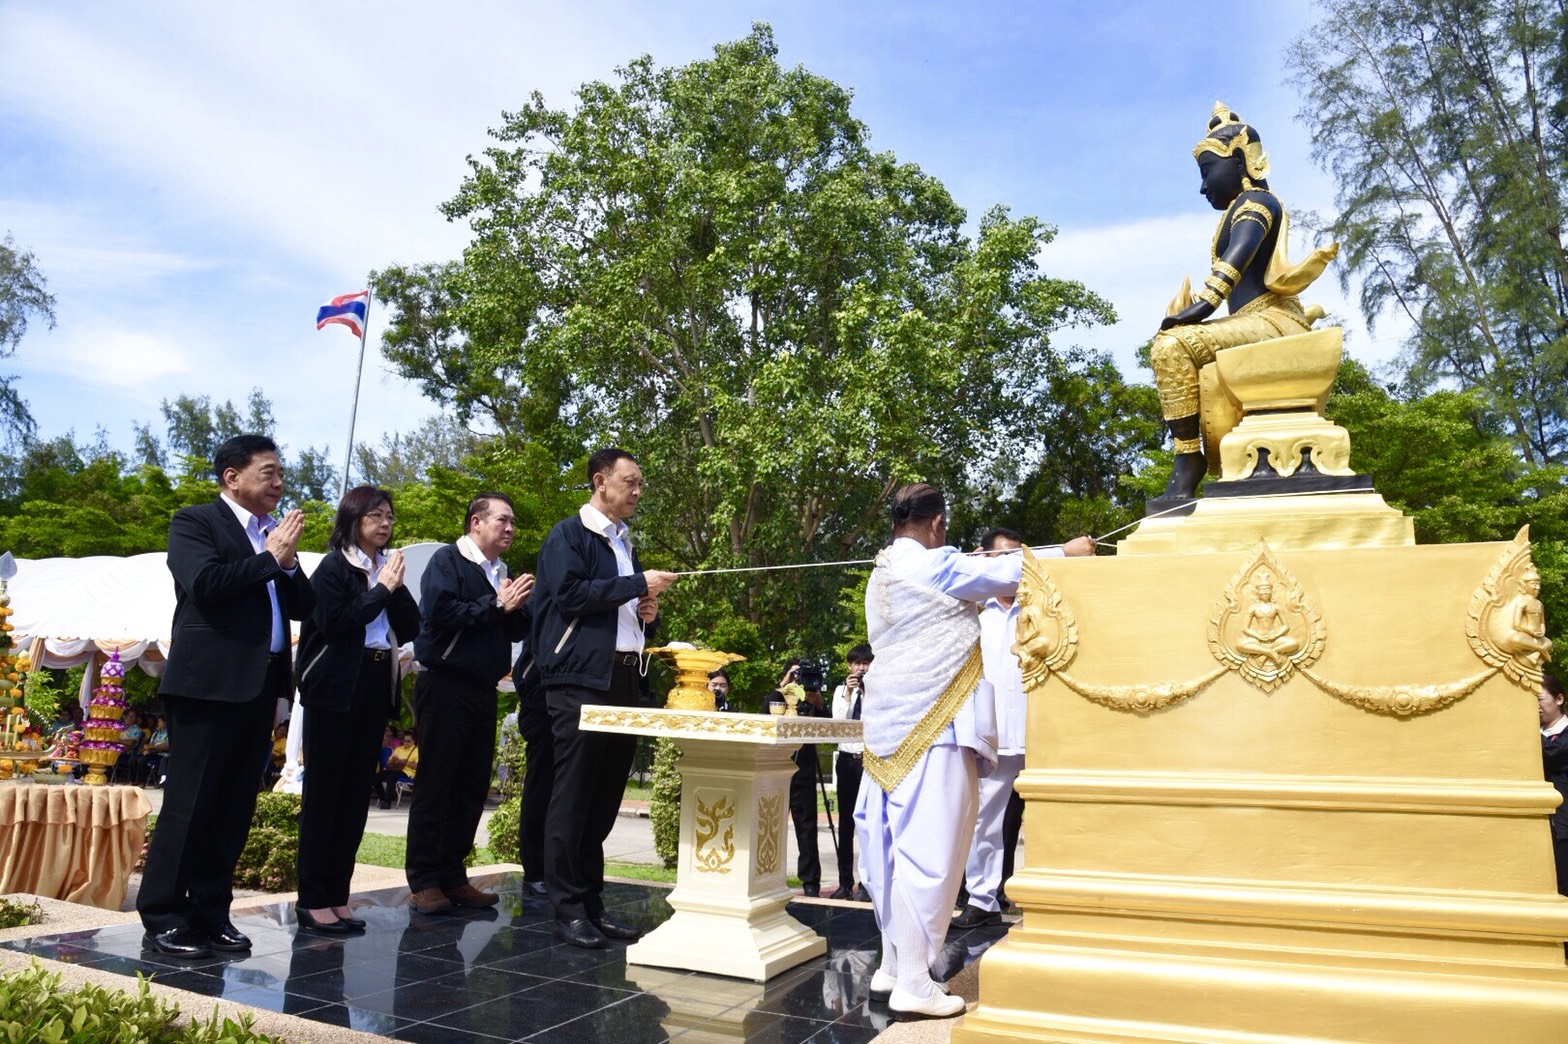 รมว.พม. ประธานพิธีบวงสรวงและประดิษฐานองค์พระประชาบดี ณ ศูนย์การเรียนรู้และฝึกอบรมด้านผู้สูงอายุ อำเภอบางละมุง จังหวัดชลบุรี